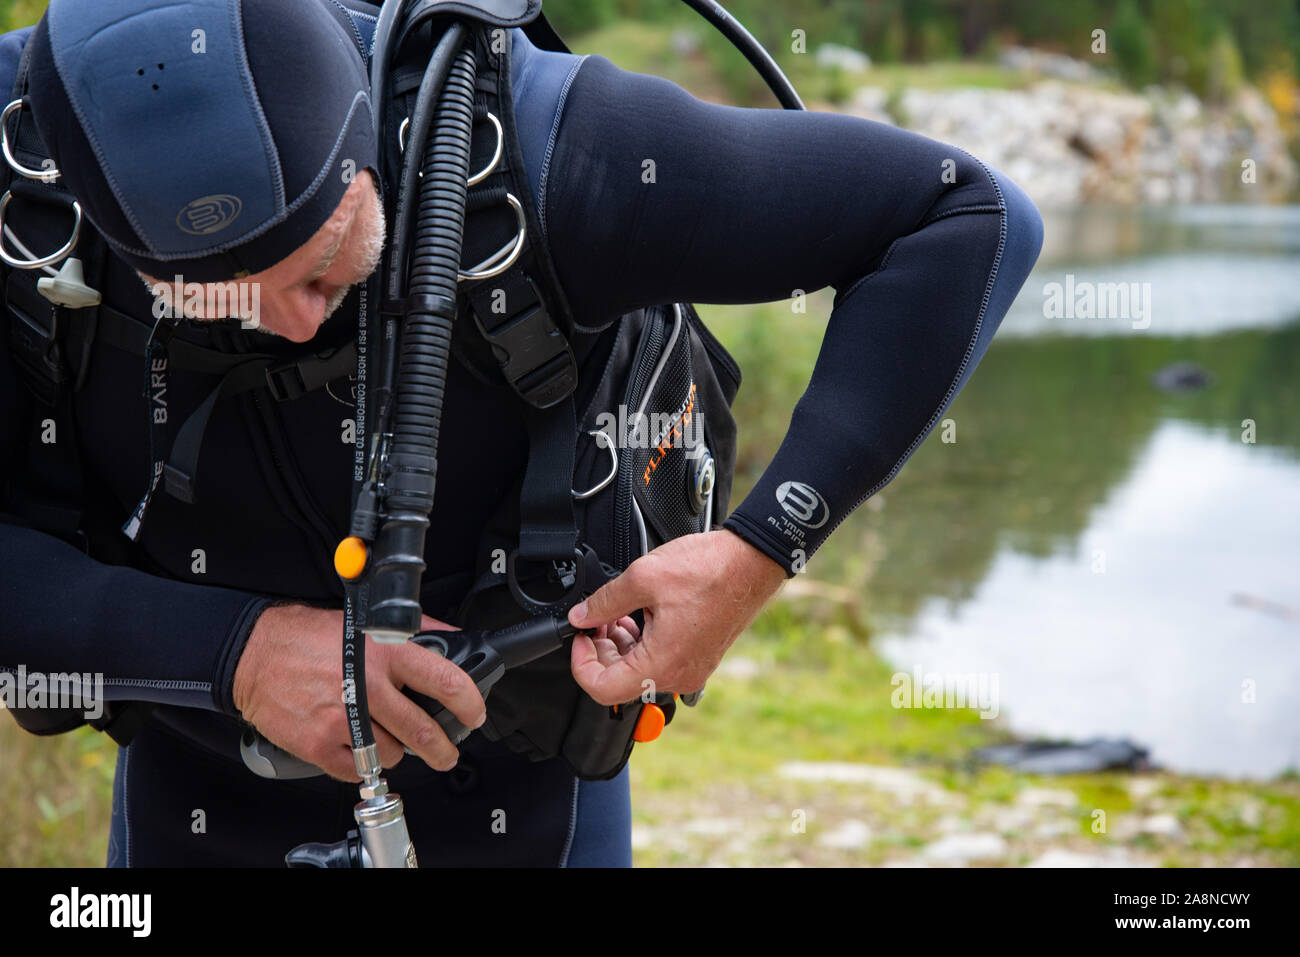 Paayanne See, Finnland - September 2019. Diver prüft Geräte in der Nähe des Sees. Männliche Taucher im Neoprenanzug überprüfen Ausrüstungen vor dem Tauchen Stockfoto